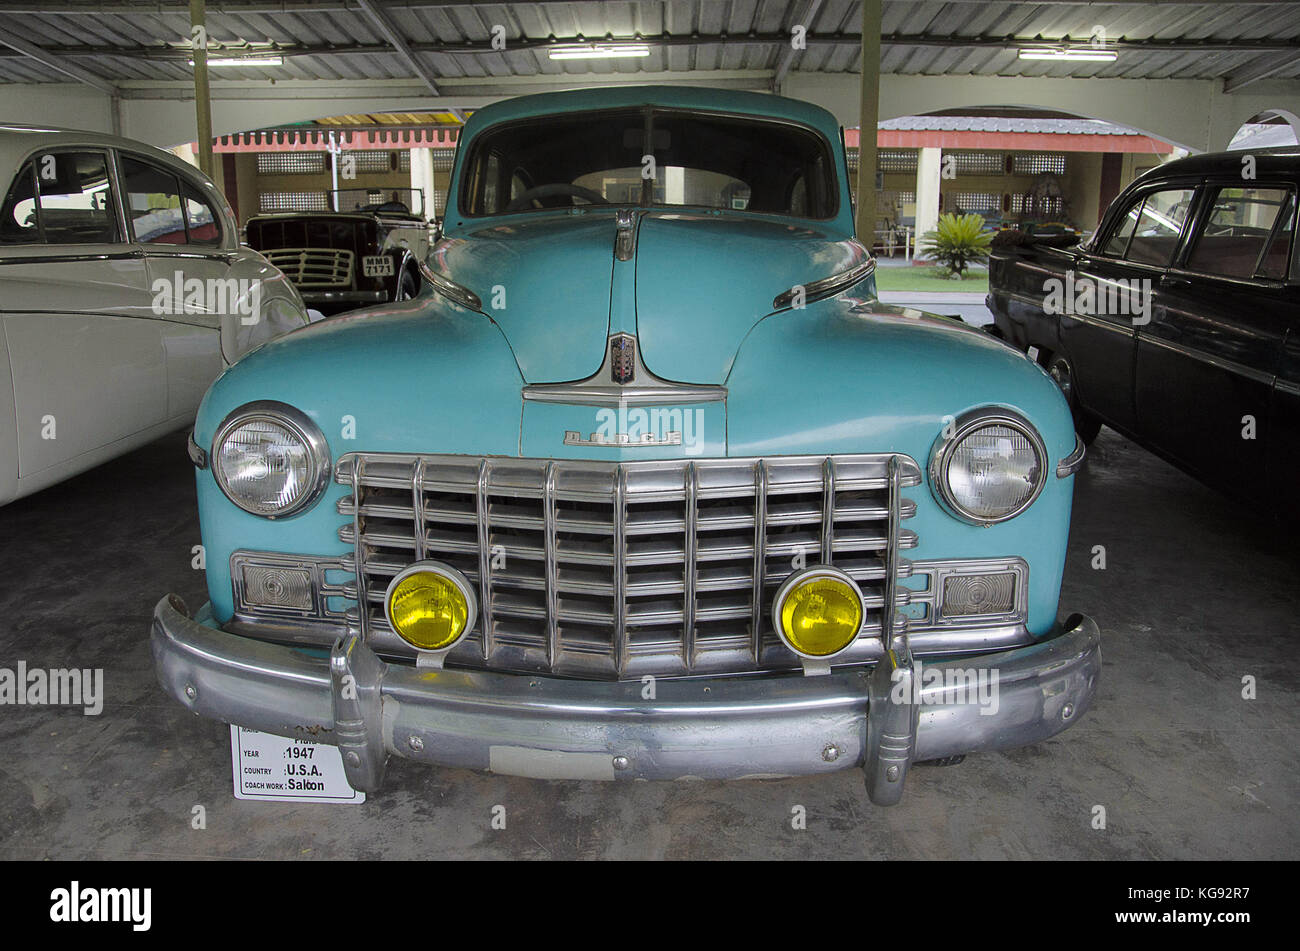 Dodge (anno 1947), coach lavoro - salone, Stati Uniti d'America. auto mondo vintage car museum, Ahmedabad, Gujarat, India Foto Stock